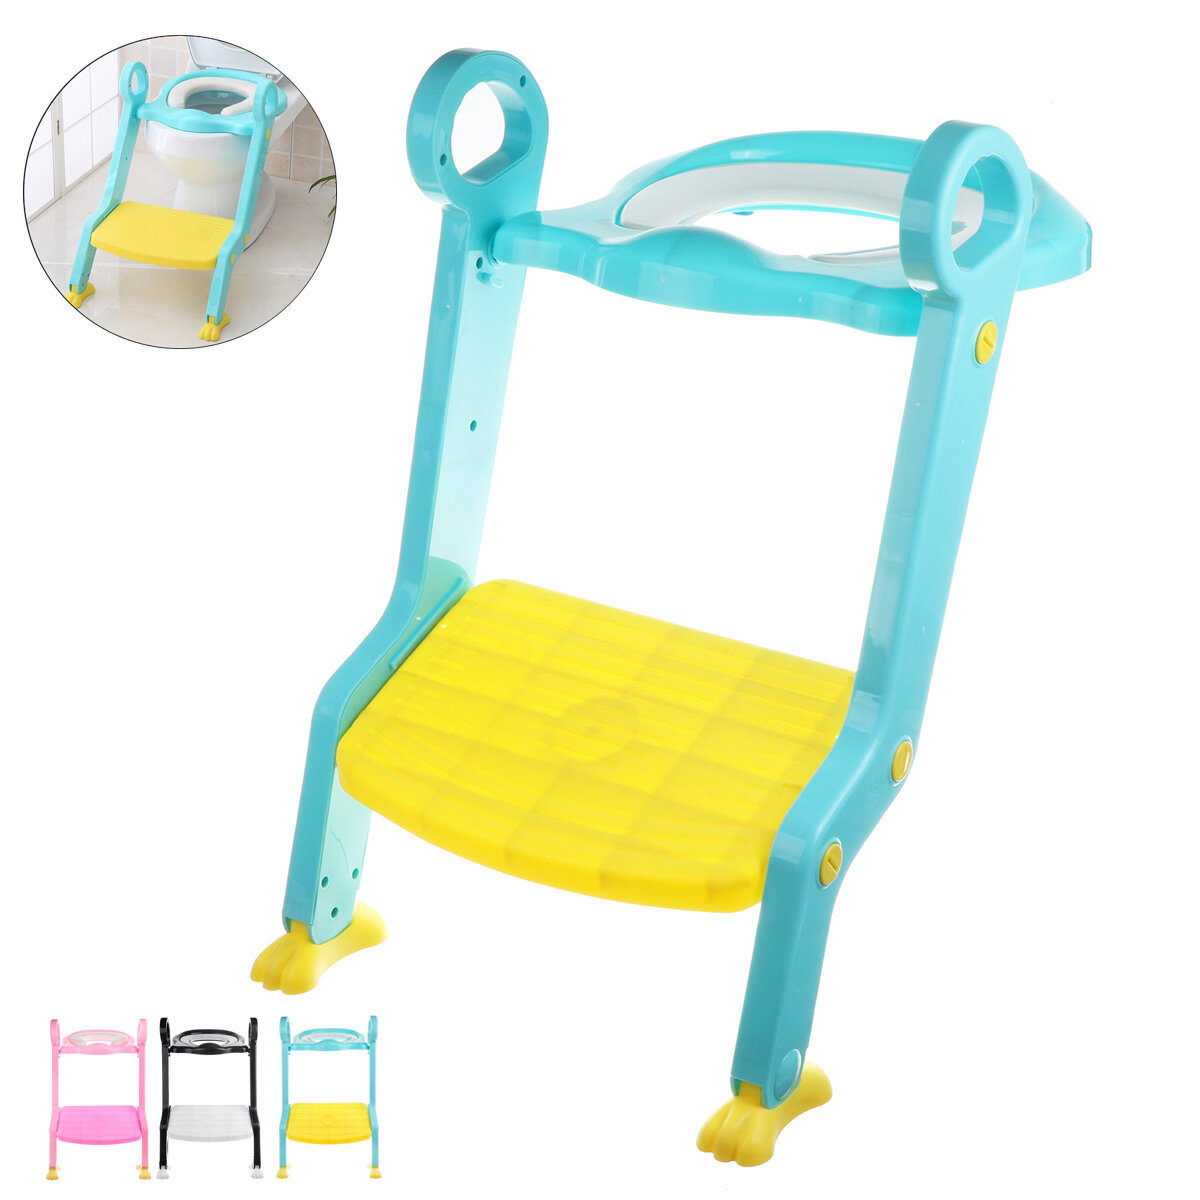 Assento de vaso sanitário infantil dobrável com degrau ajustável para uso seguro. Presente para crianças pequenas.